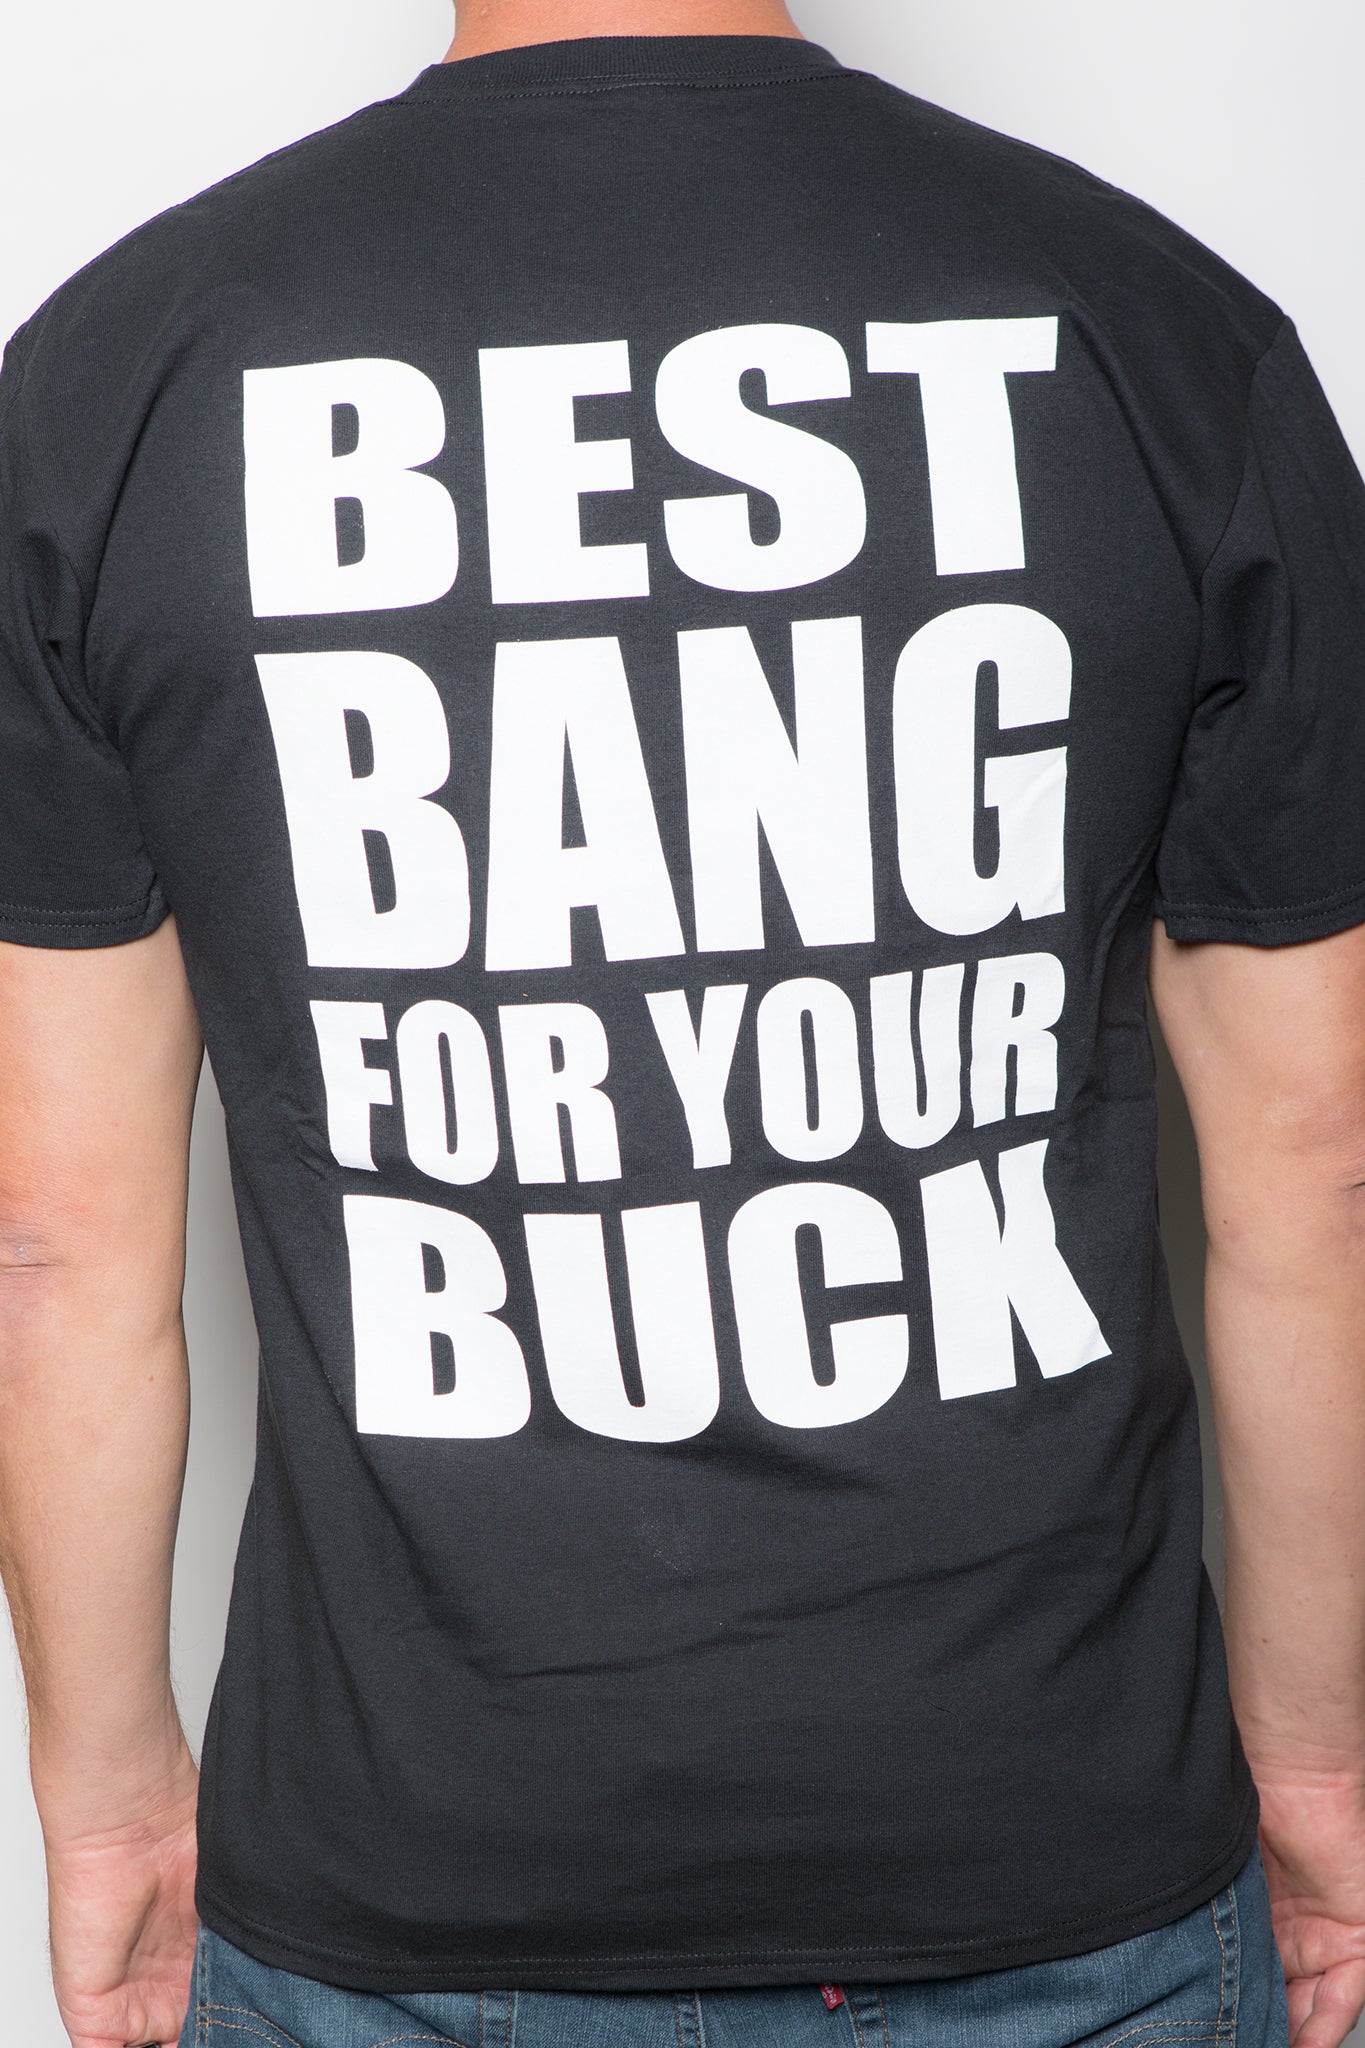 Men's "BEST BANG FOR YOUR BUCK" Tee